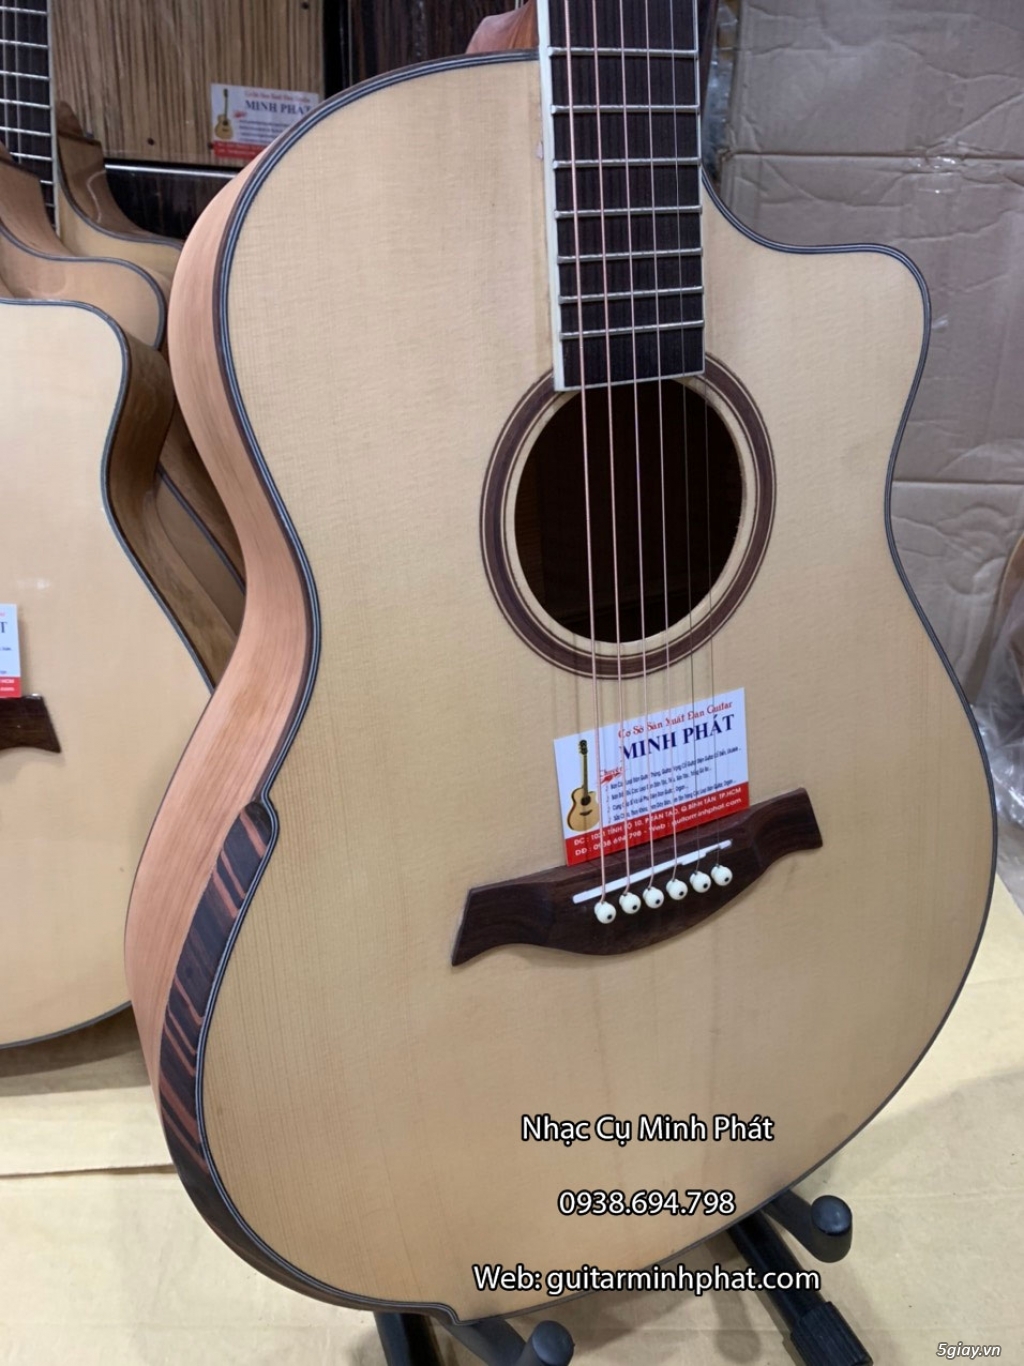 Bán đàn guitar, ukulele, kalimba giá rẻ ở quận Gò Vấp TPHCM - 16